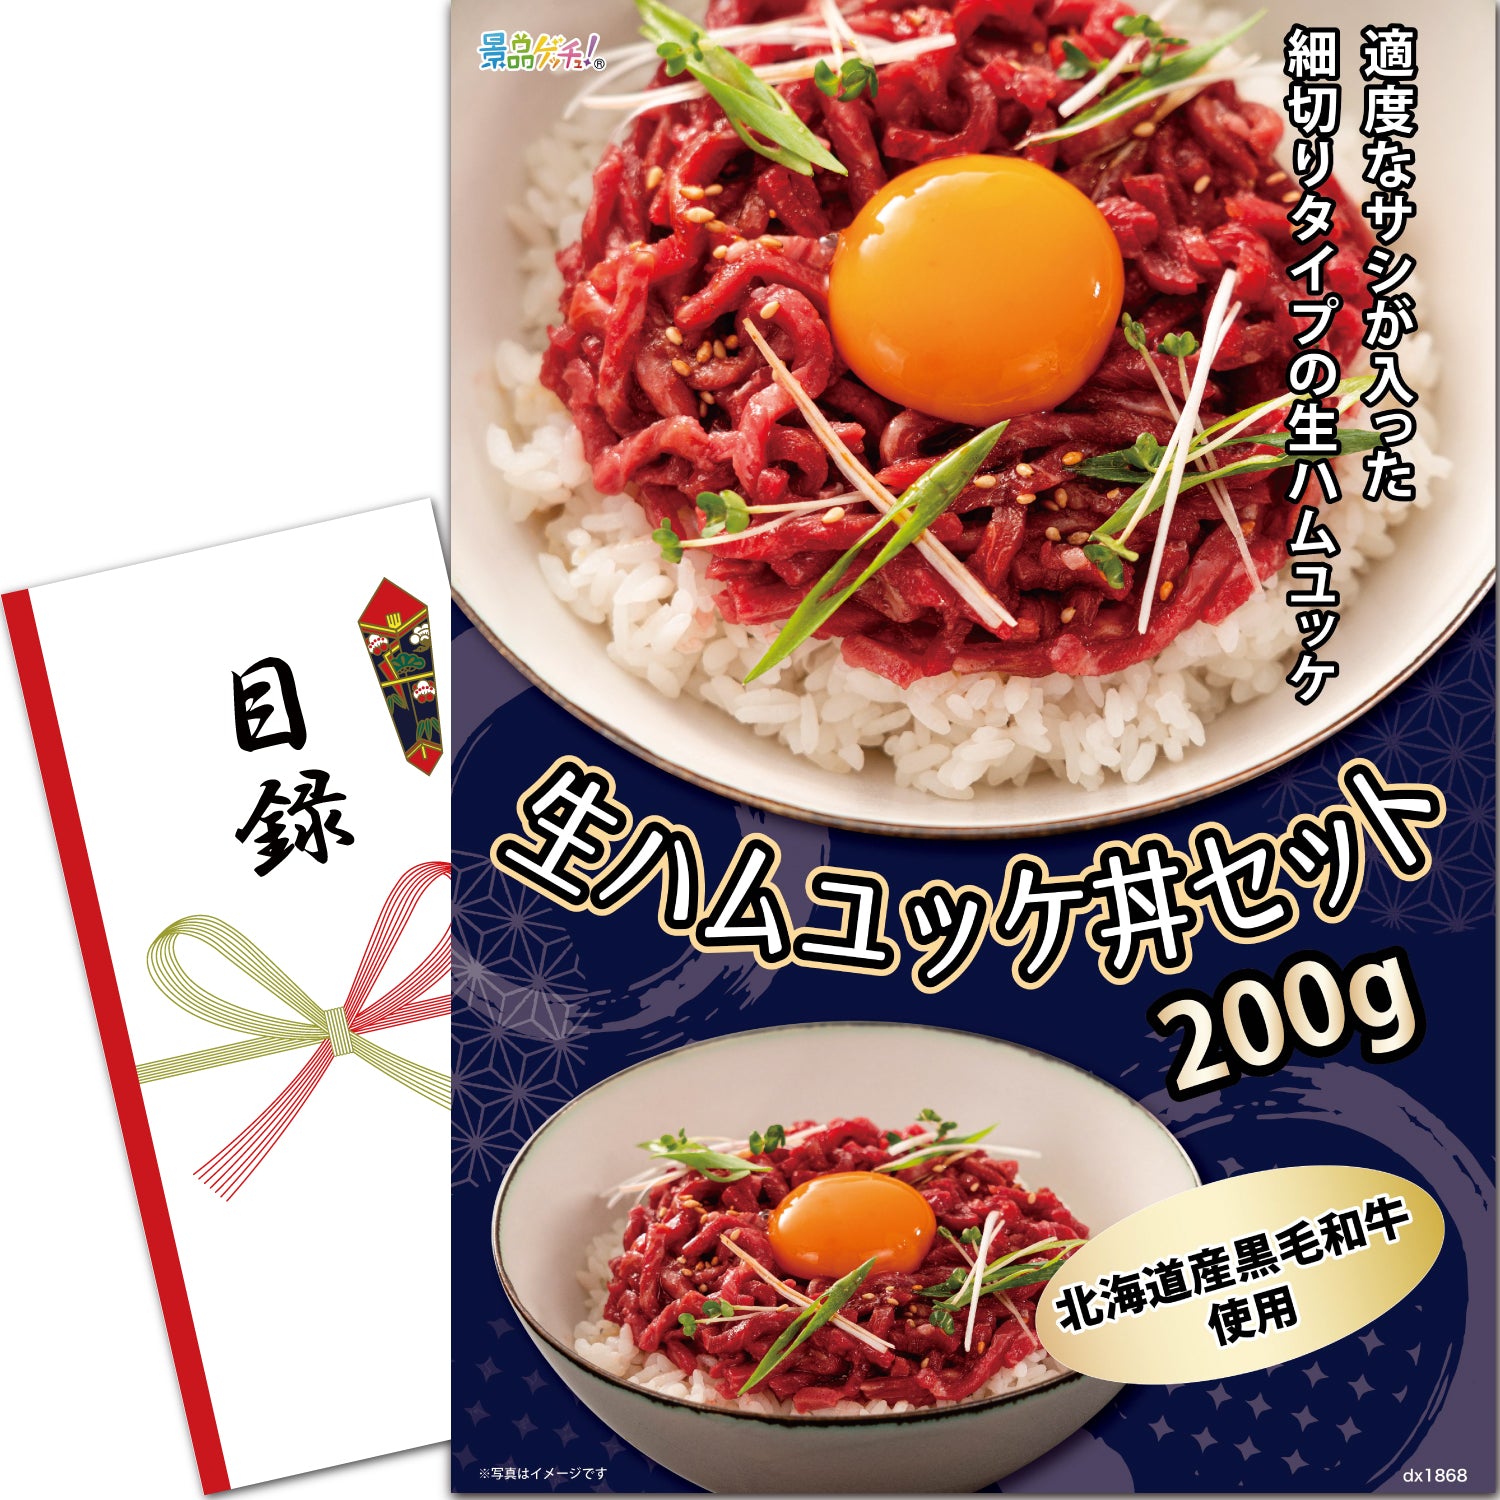 北海道産 黒毛和牛 生ハム ユッケ丼 セット 200g